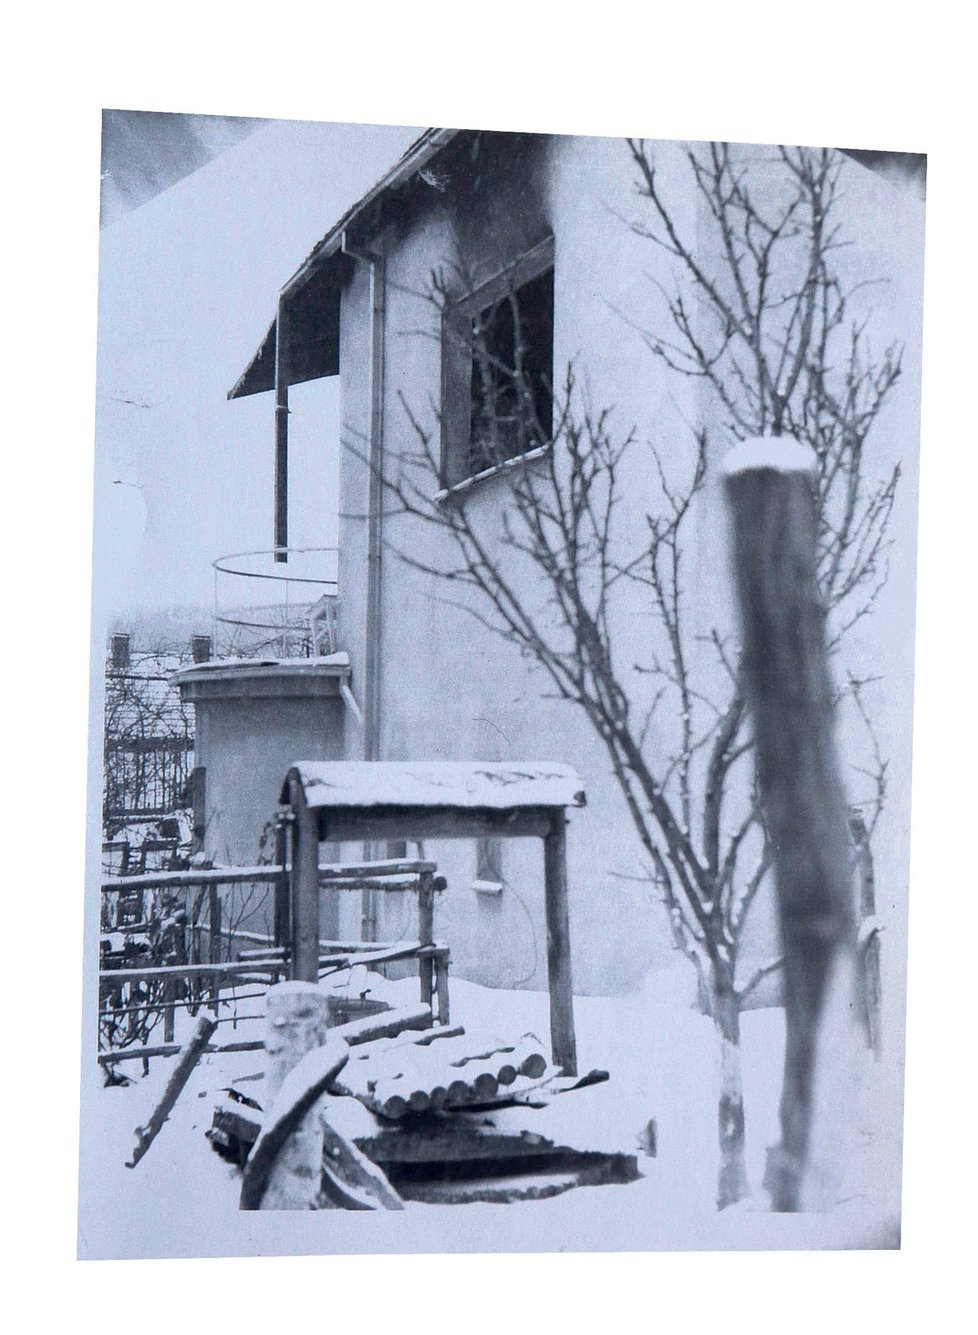 Fotografie vyhořelého domu pořídil kdosi z příbuzných den po vraždě. Poprvé ukazují poničené stromy a skutečnou studnu